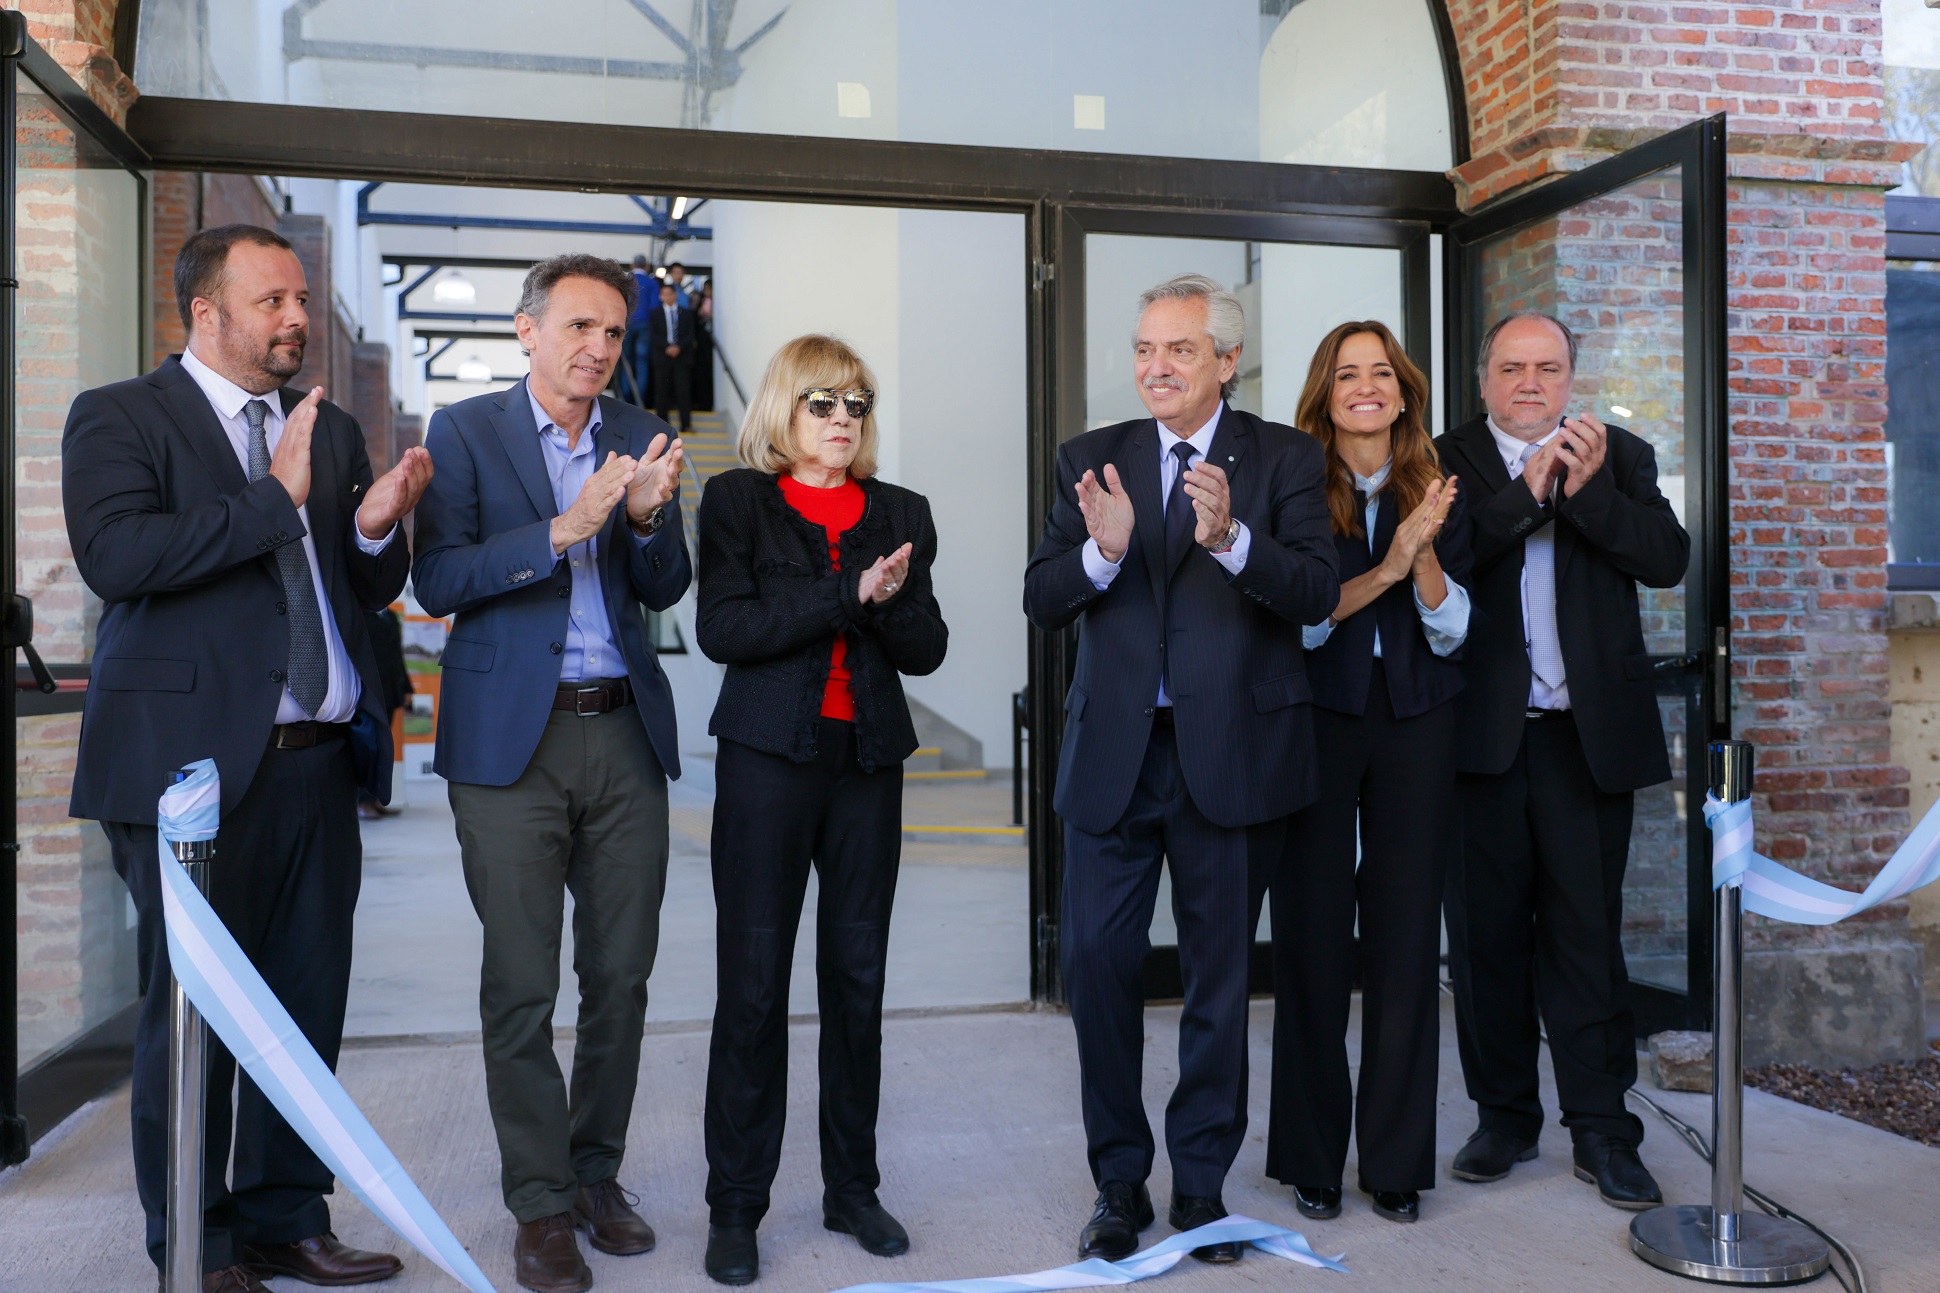 El presidente inauguró dos nuevos edificios en la Universidad Nacional de Lanús